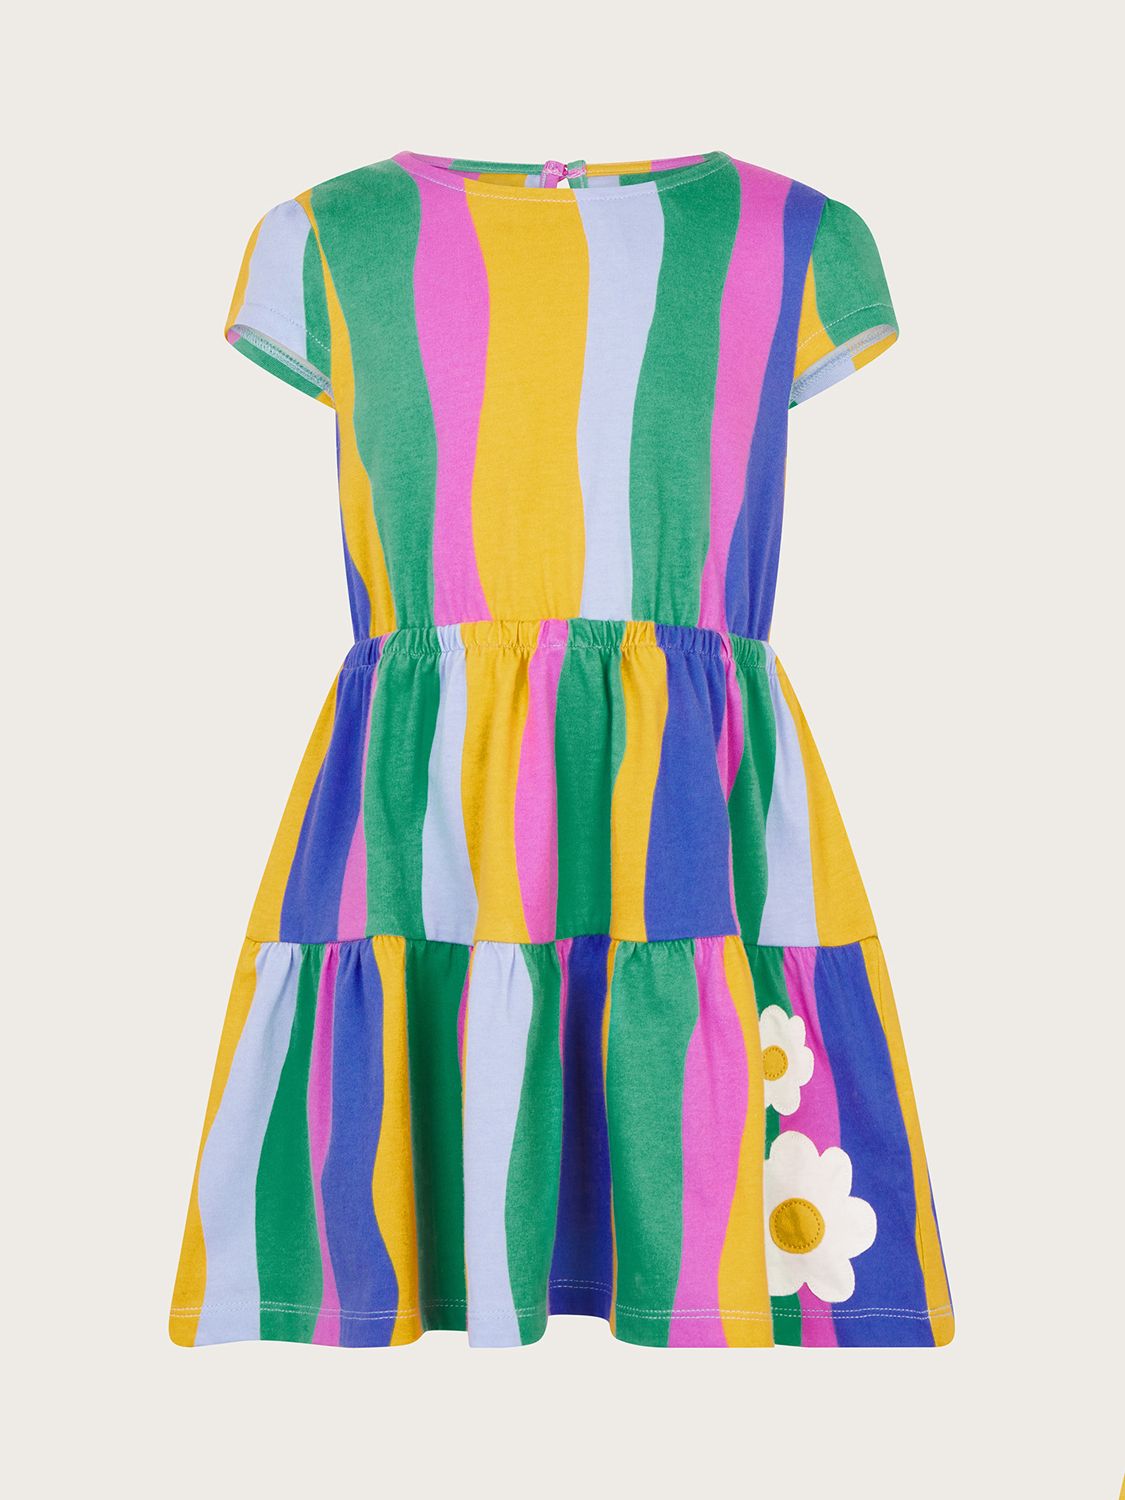 Monsoon Kids' Wavy Stripe Daisy Motif Dress, Multi, 3-4 years